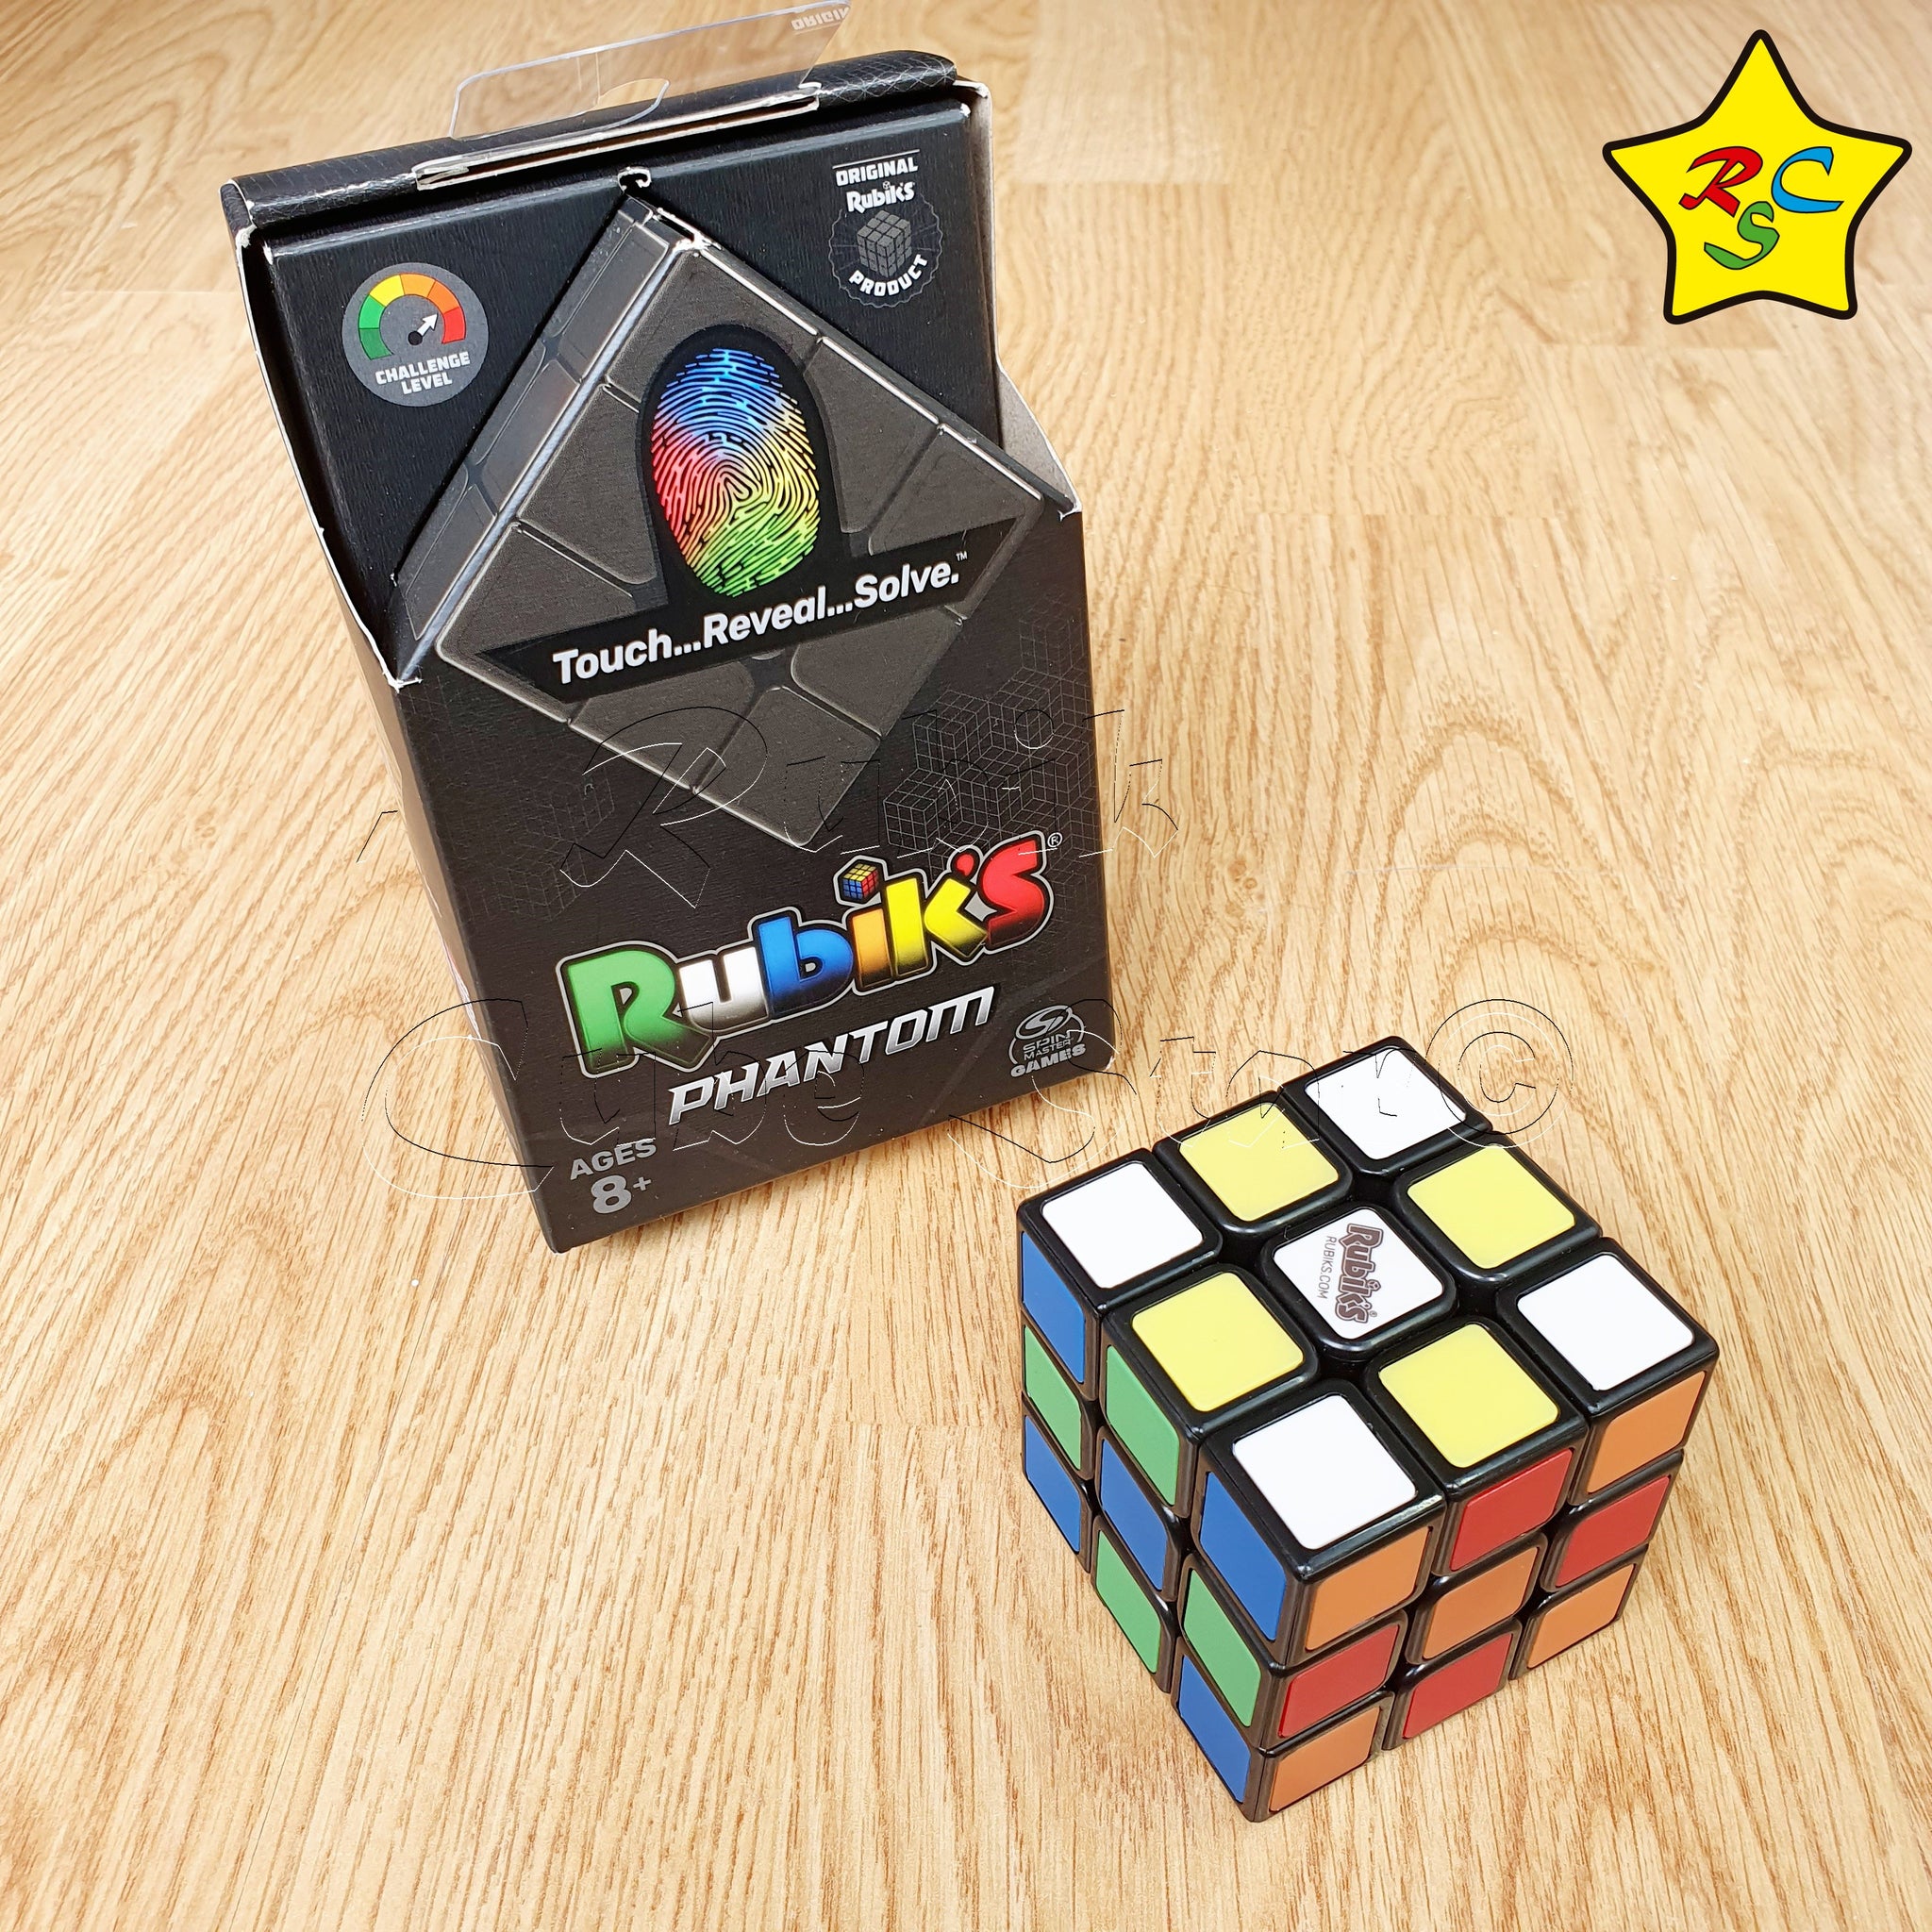 Venta De Cubos Rubik Cubo Rubik's 3x3 Phantom Hasbro Original Fantasma Color – Rubik Cube Star